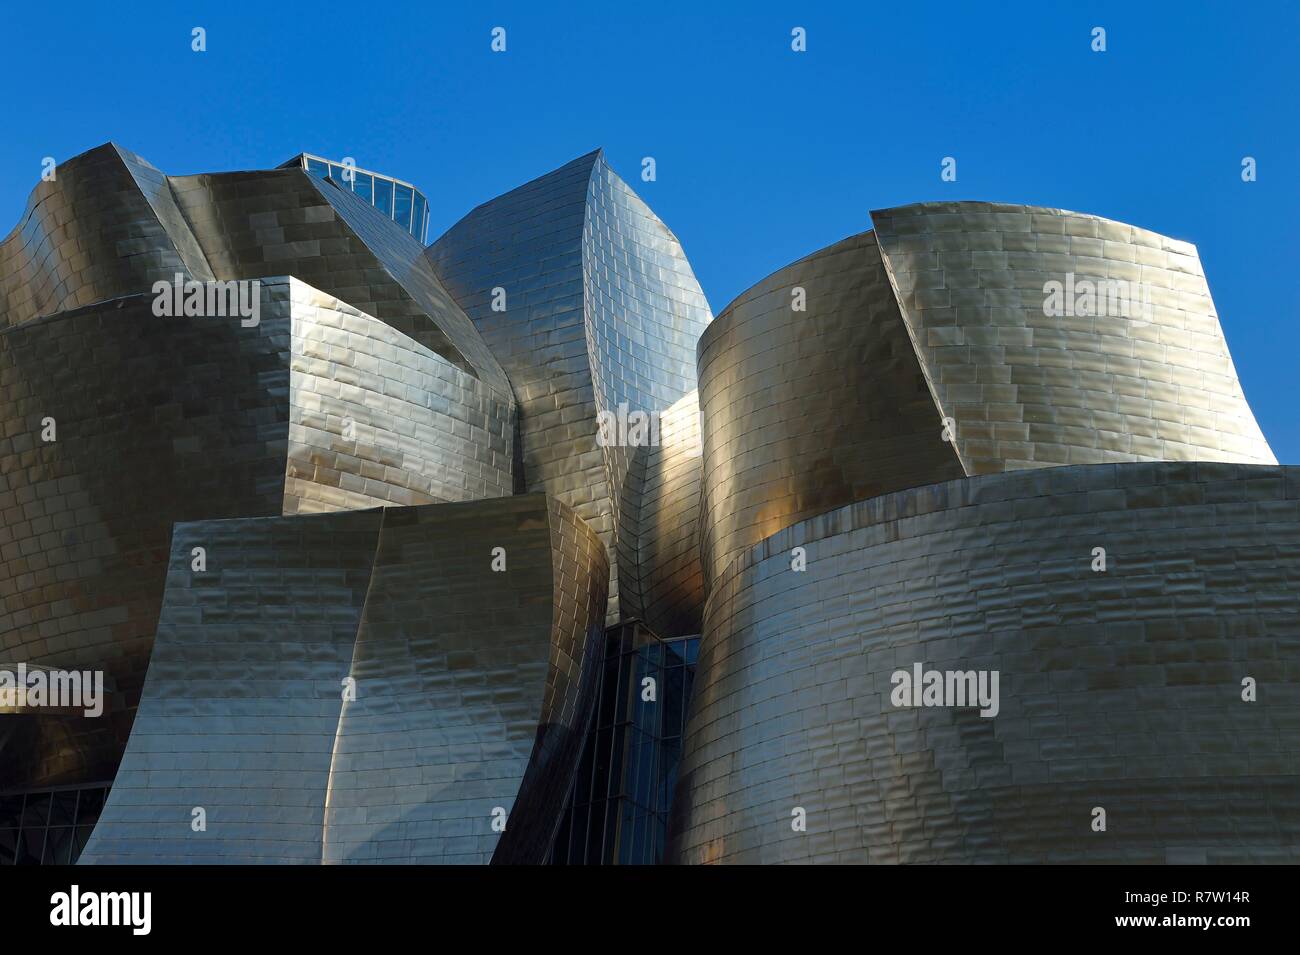 Espagne, Pays Basque, Province de Biscaye, Bilbao, le musée Guggenheim conçu par Frank Gehry Banque D'Images